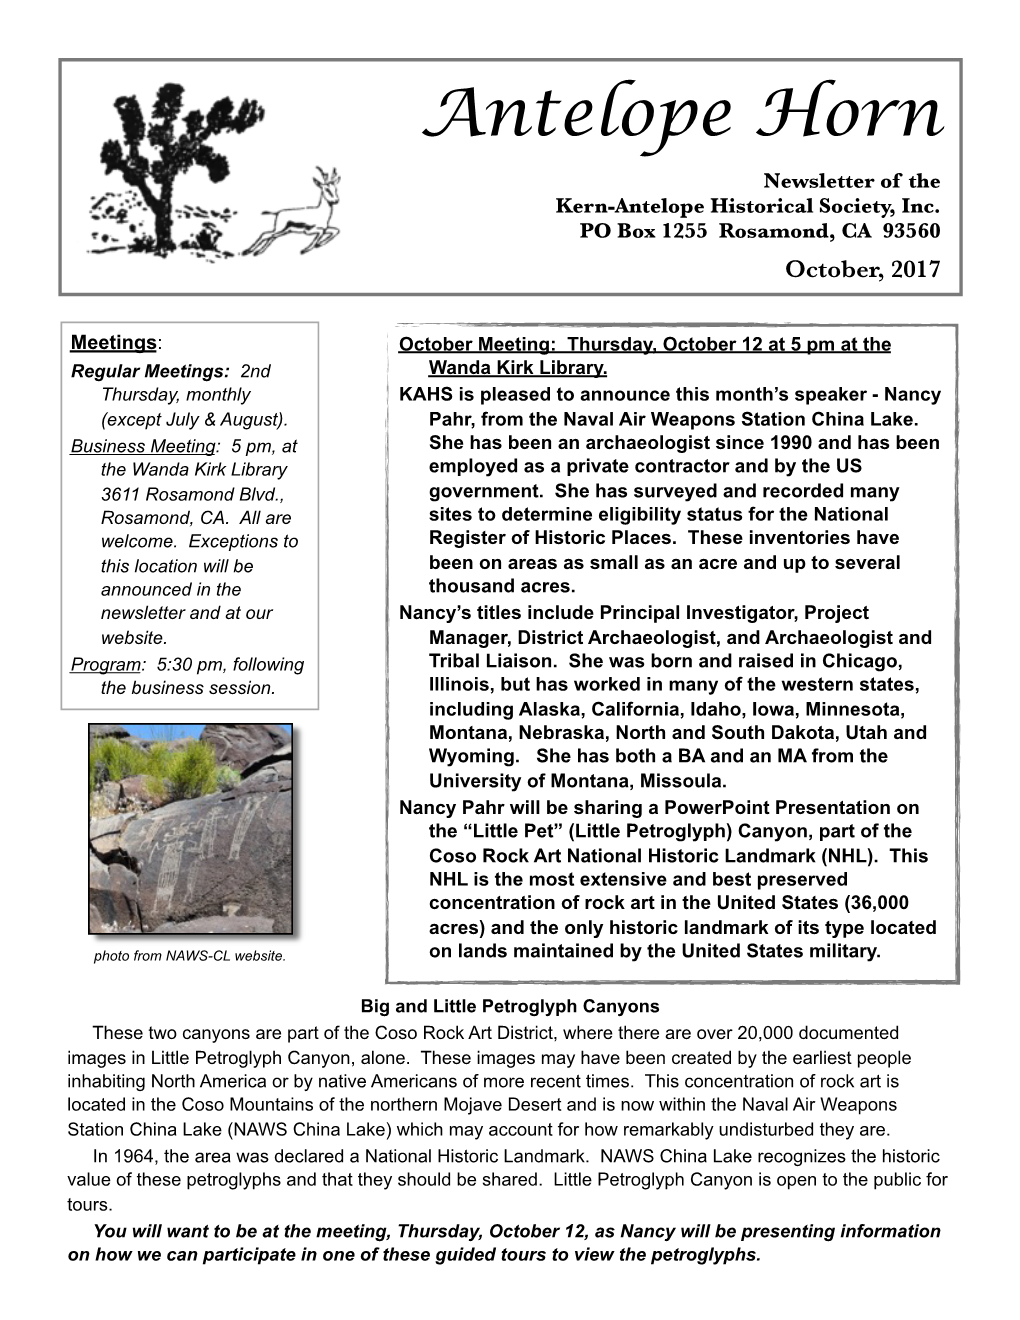 Antelope Horn Newsletter of the Kern-Antelope Historical Society, Inc